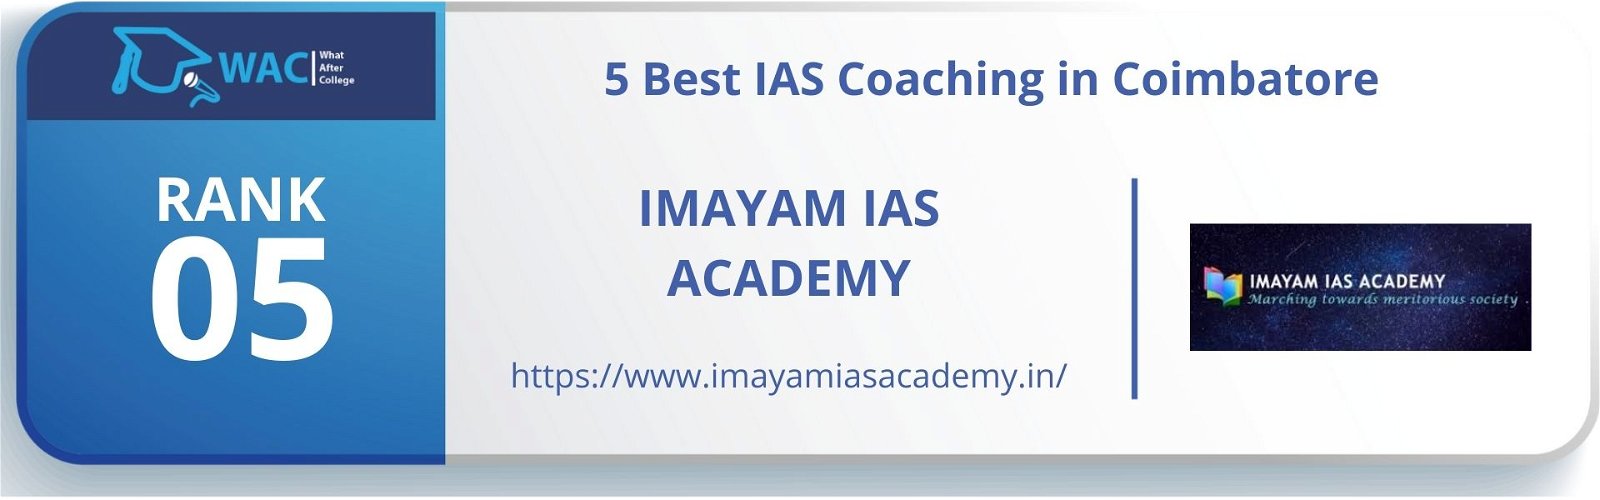 5 Best IAS Coaching in Coimbatore Rank 5: Imayam IAS Academy in Coimbatore